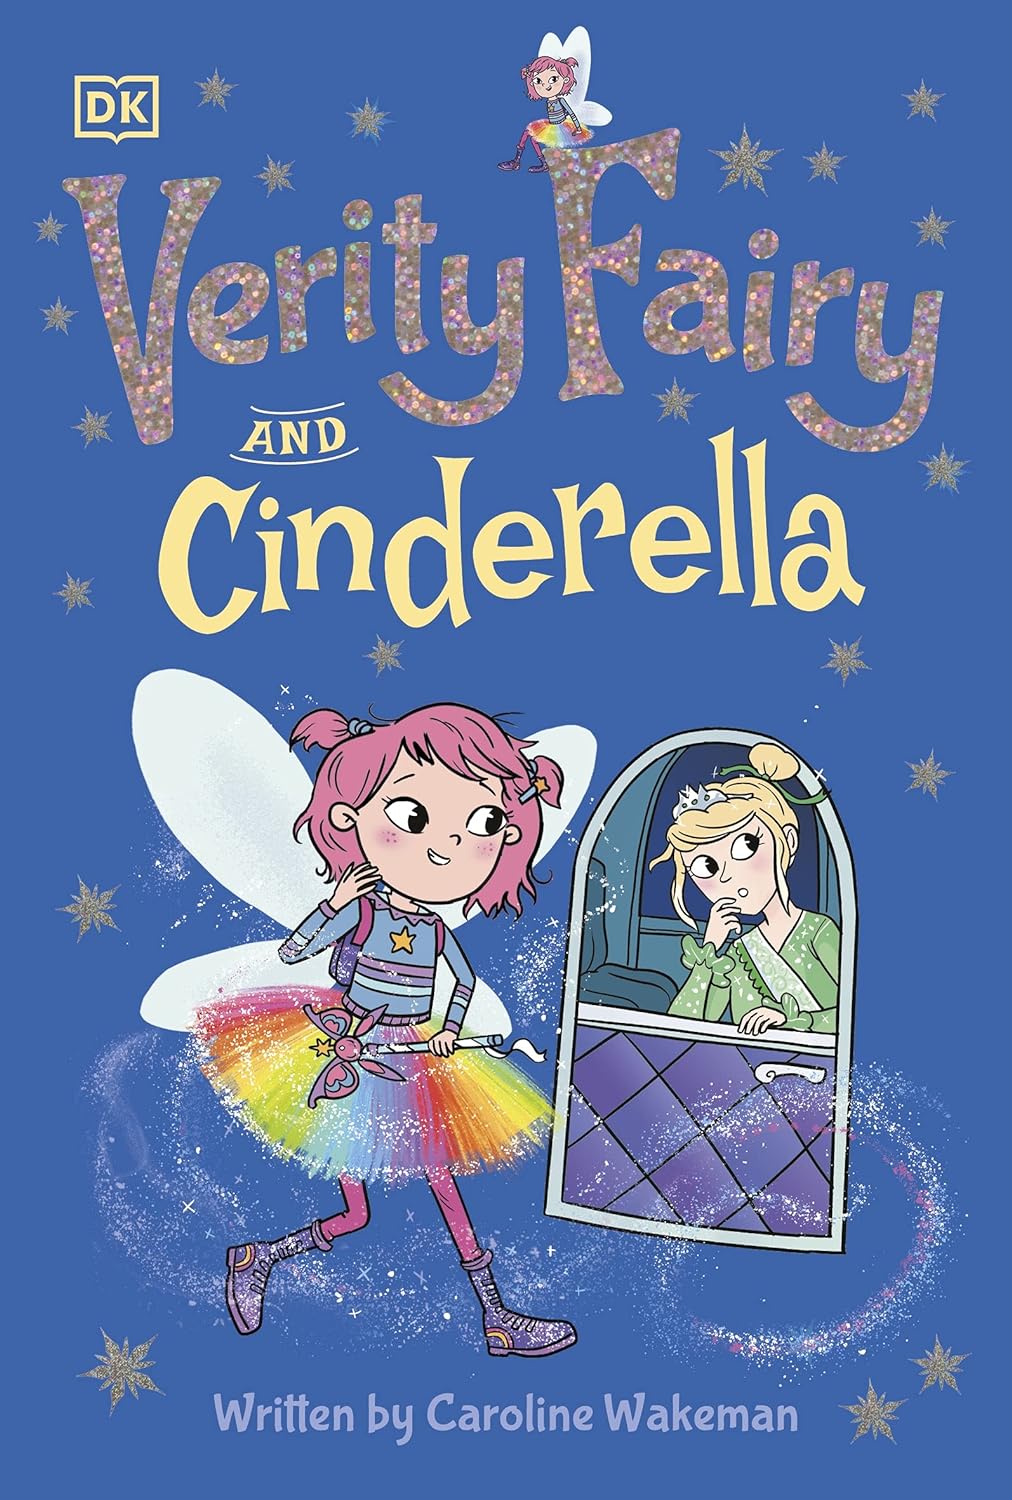 Verity Fairy and Cinderella